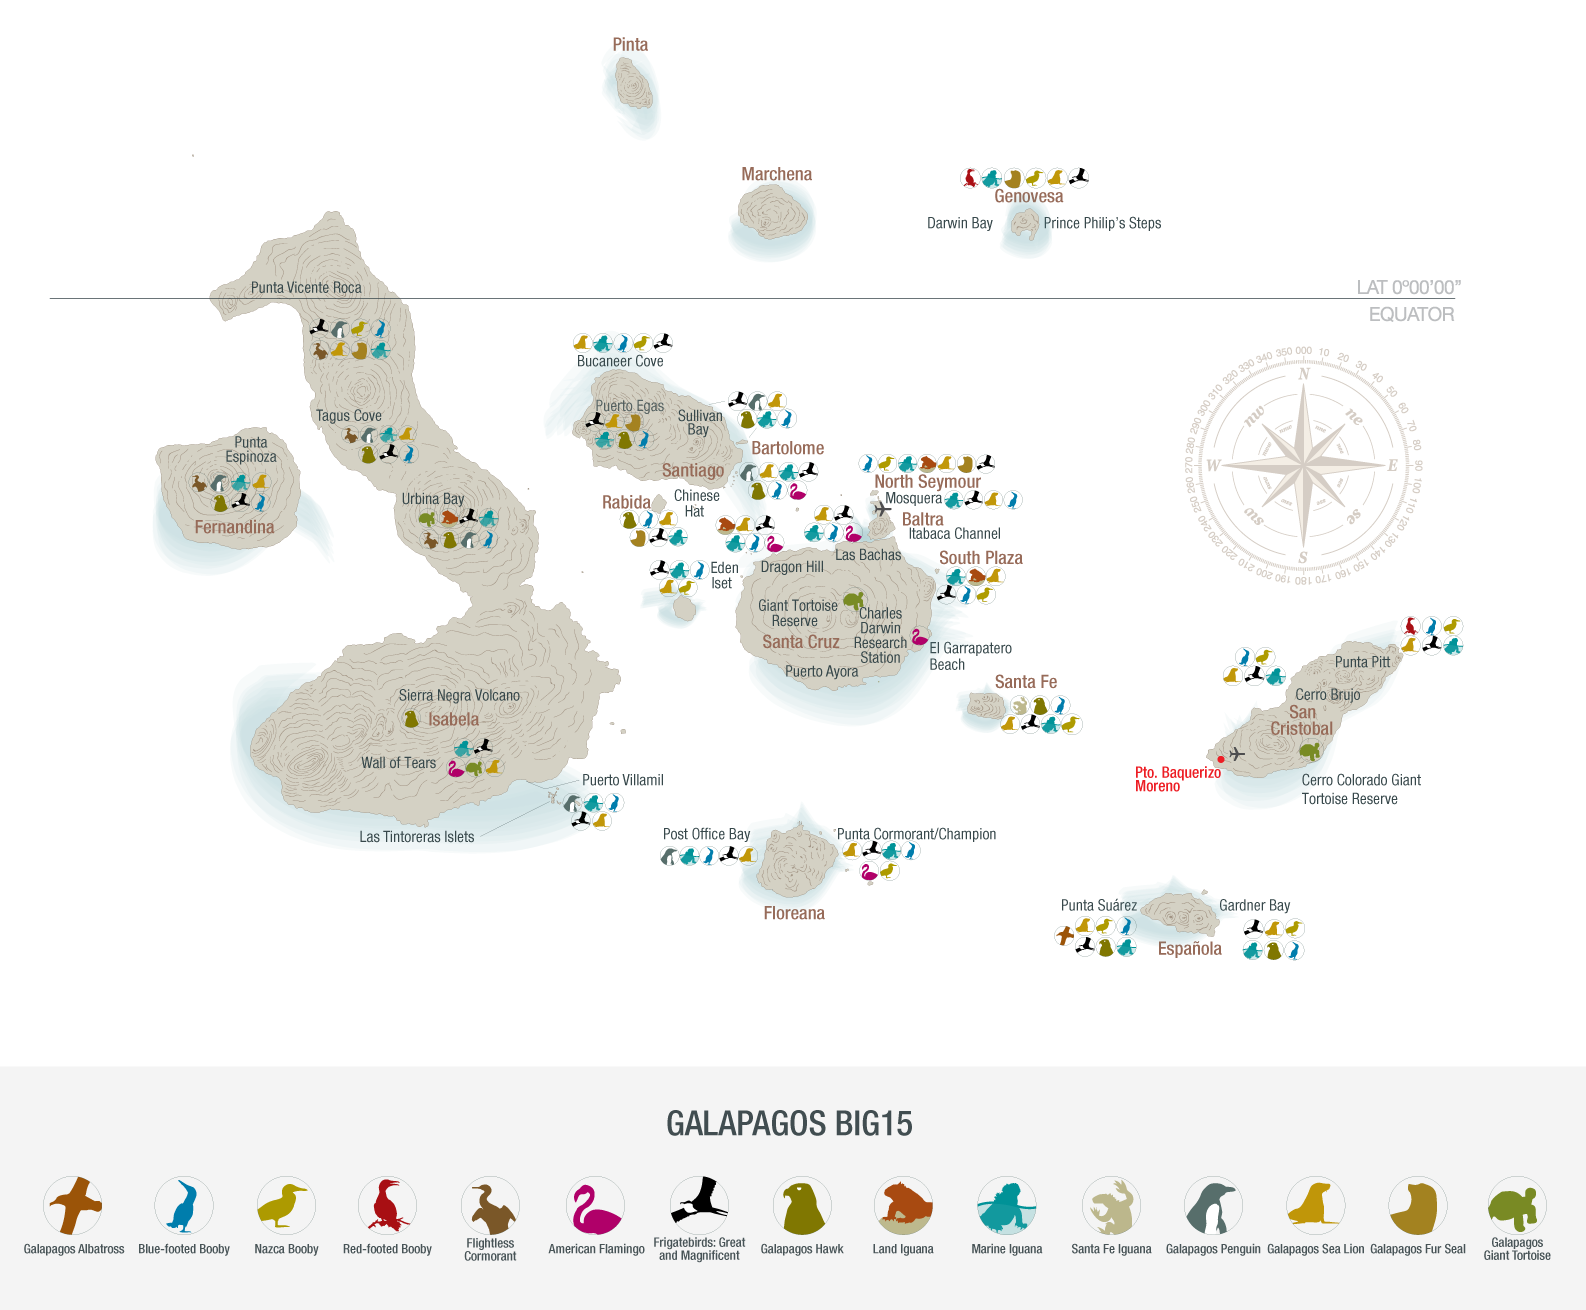 Galapagos Big15 Map